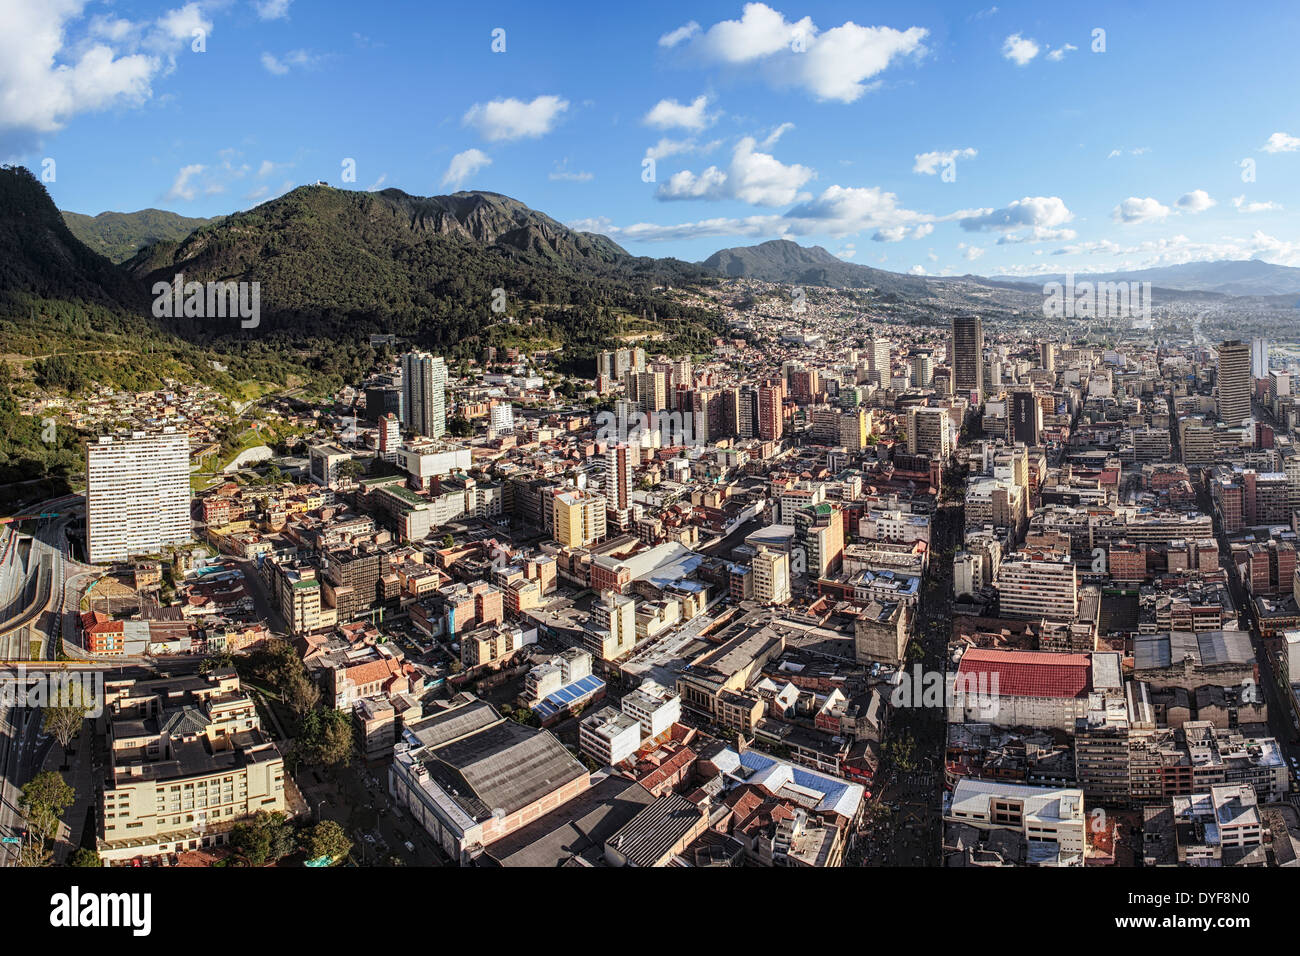 Vista aerea di Bogotà, la capitale della Colombia. Vista panoramica dal centro al sud con Guadalupe Hill sulla sinistra. Foto Stock